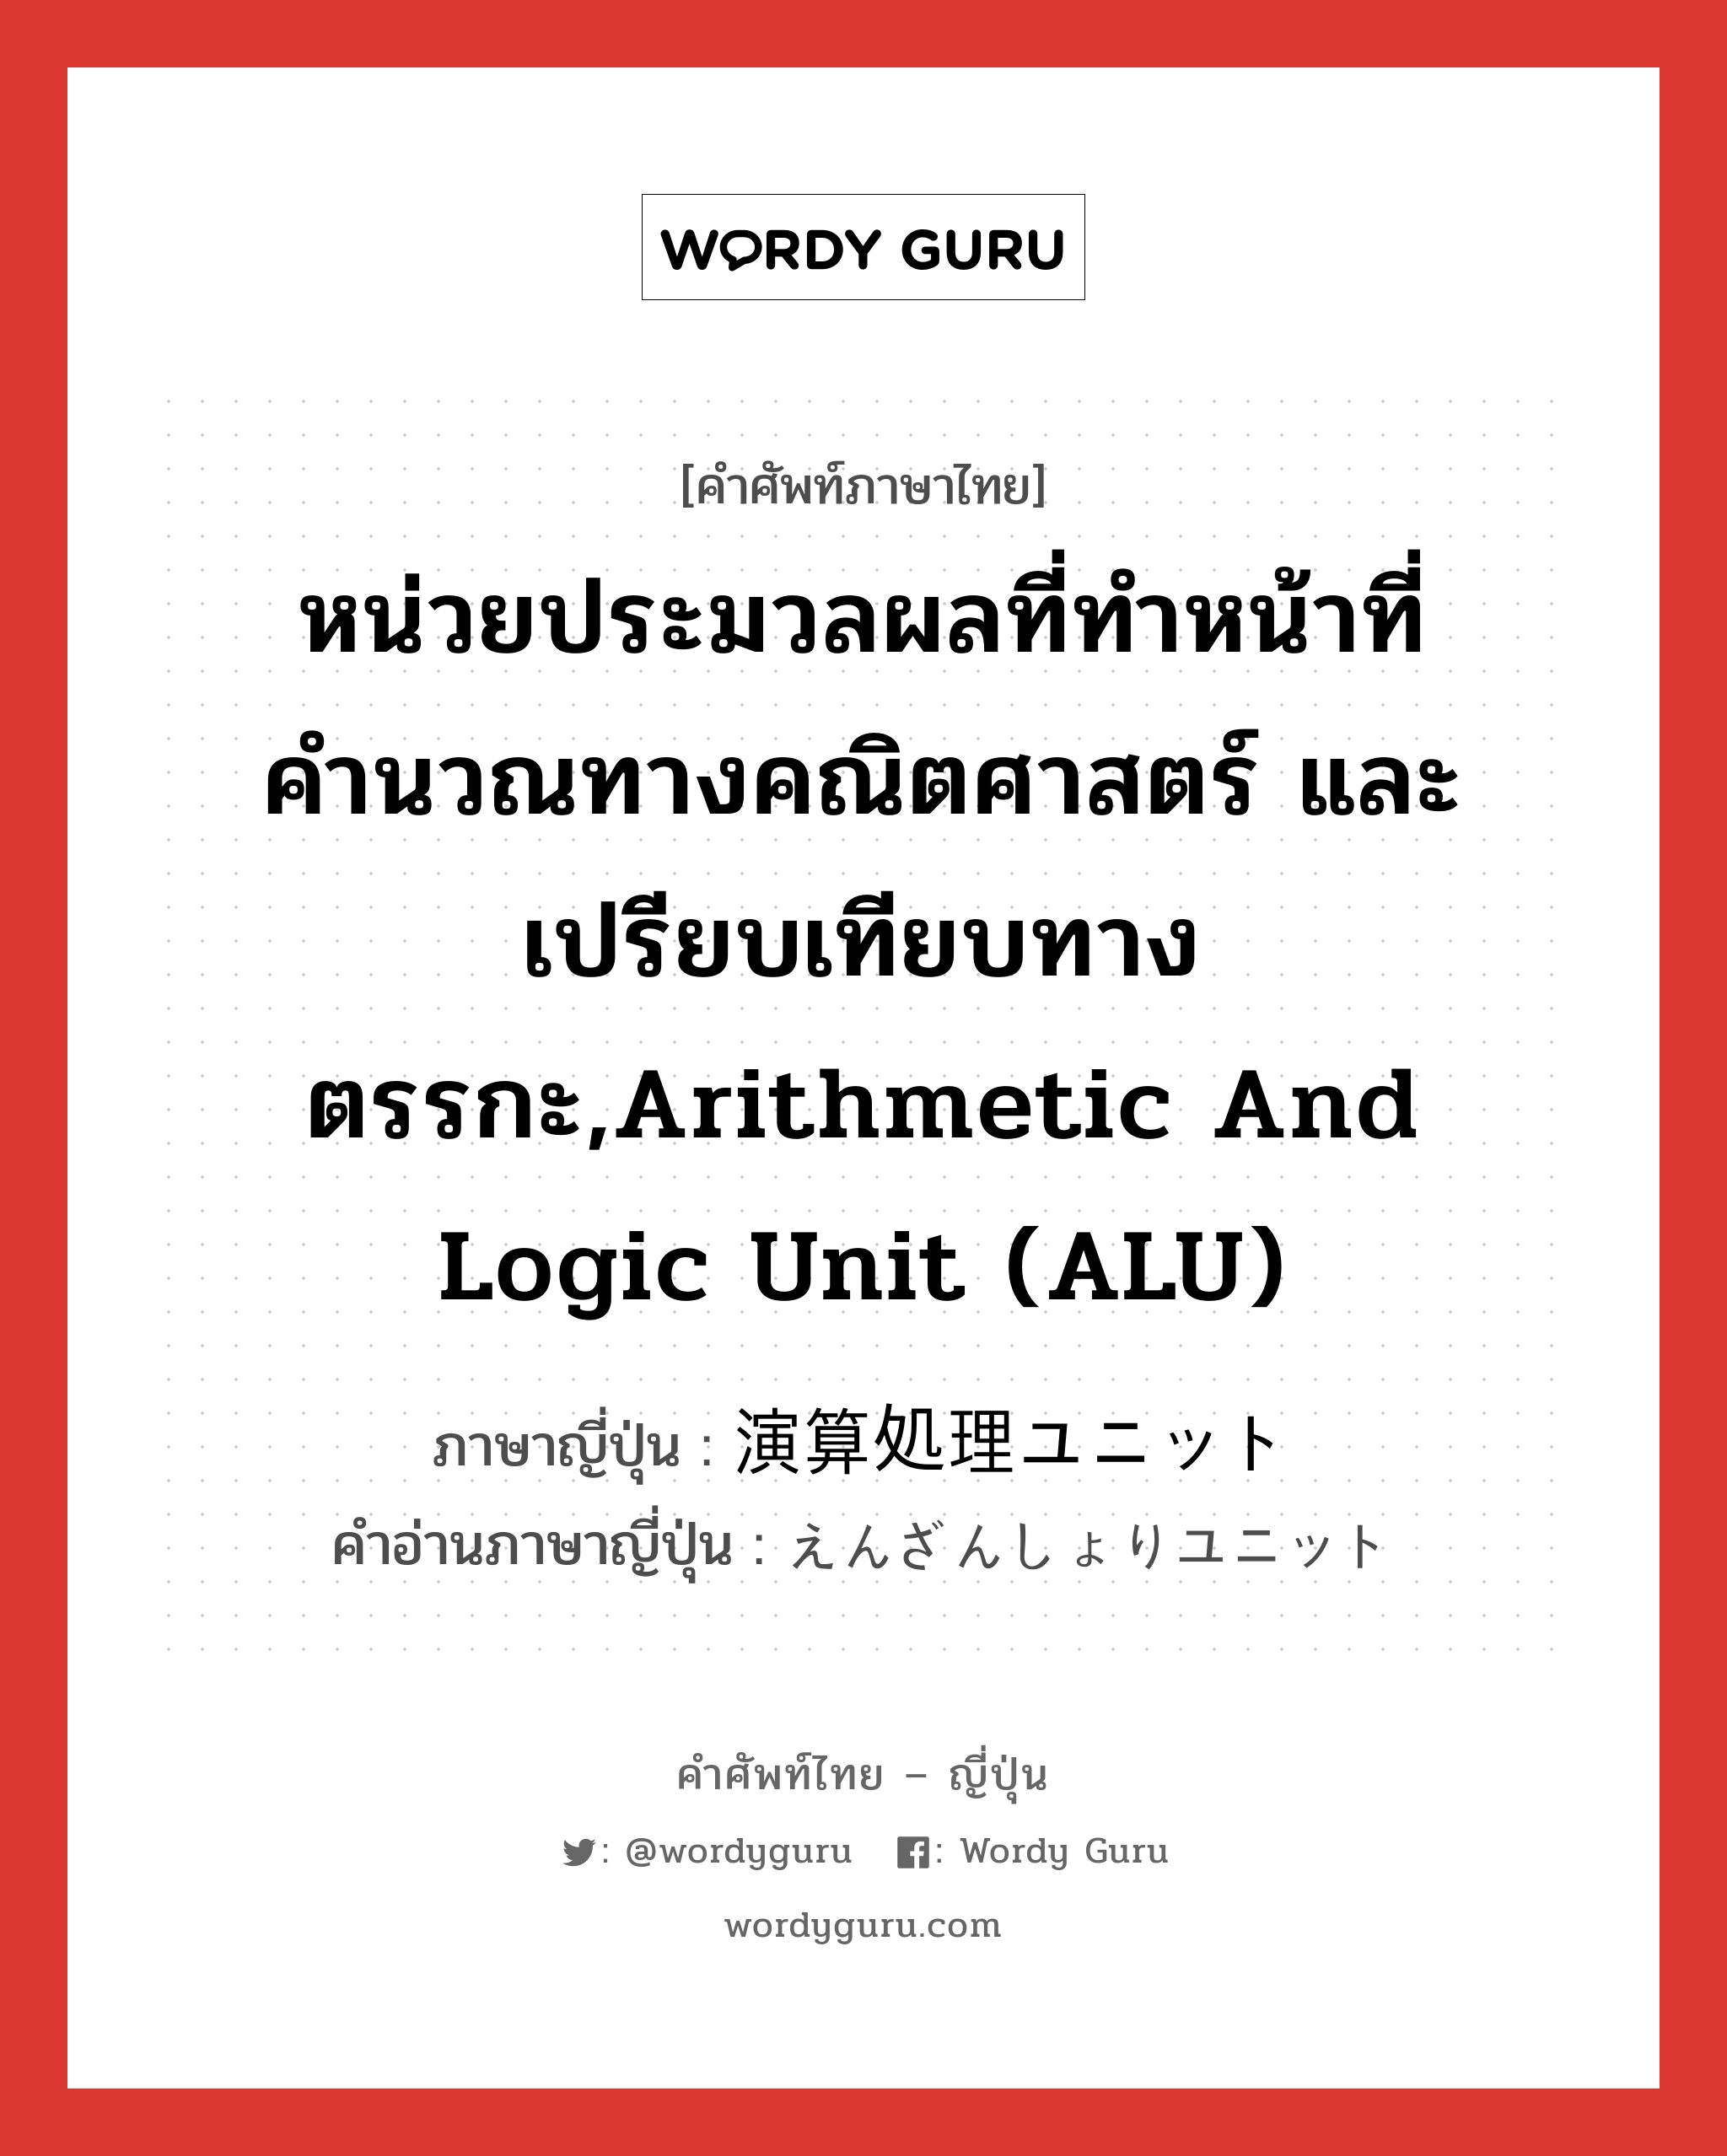 หน่วยประมวลผลที่ทำหน้าที่คำนวณทางคณิตศาสตร์ และเปรียบเทียบทางตรรกะ,Arithmetic and Logic Unit (ALU) ภาษาญี่ปุ่นคืออะไร, คำศัพท์ภาษาไทย - ญี่ปุ่น หน่วยประมวลผลที่ทำหน้าที่คำนวณทางคณิตศาสตร์ และเปรียบเทียบทางตรรกะ,Arithmetic and Logic Unit (ALU) ภาษาญี่ปุ่น 演算処理ユニット คำอ่านภาษาญี่ปุ่น えんざんしょりユニット หมวด n หมวด n